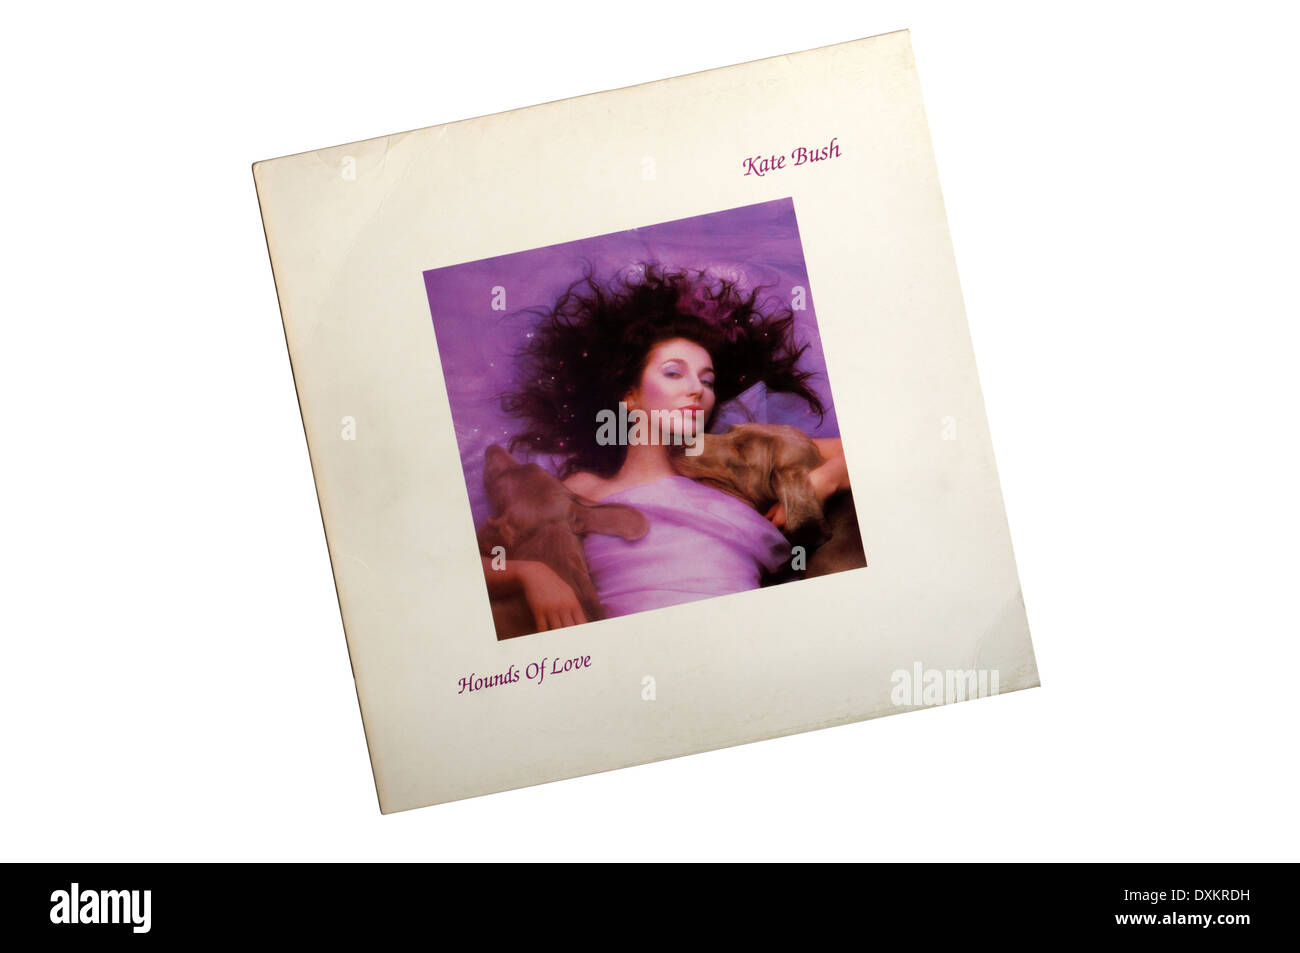 Segugi di amore è il quinto album in studio dalla cantante inglese Kate Bush. È stato rilasciato nel 1985. Foto Stock